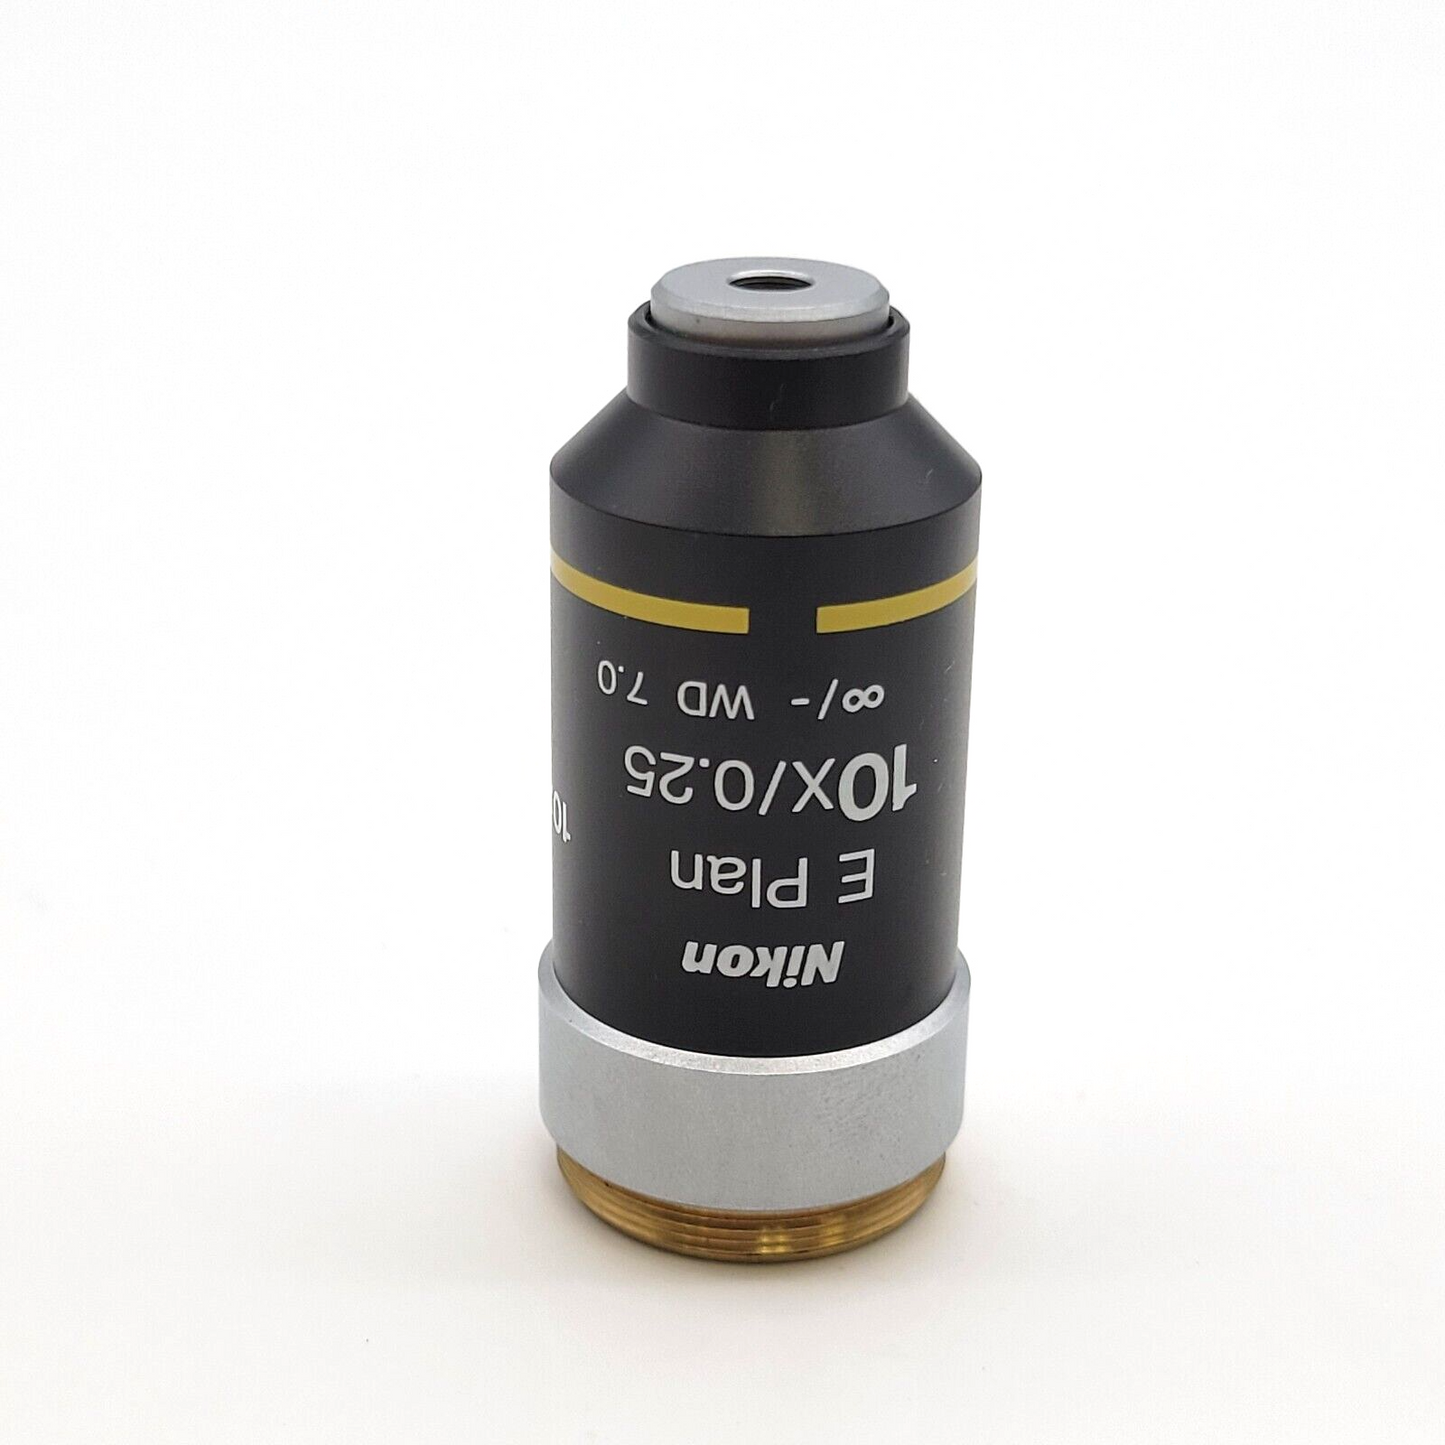 Nikon Microscope Objective E Plan 10x/0.25 for E200 - microscopemarketplace